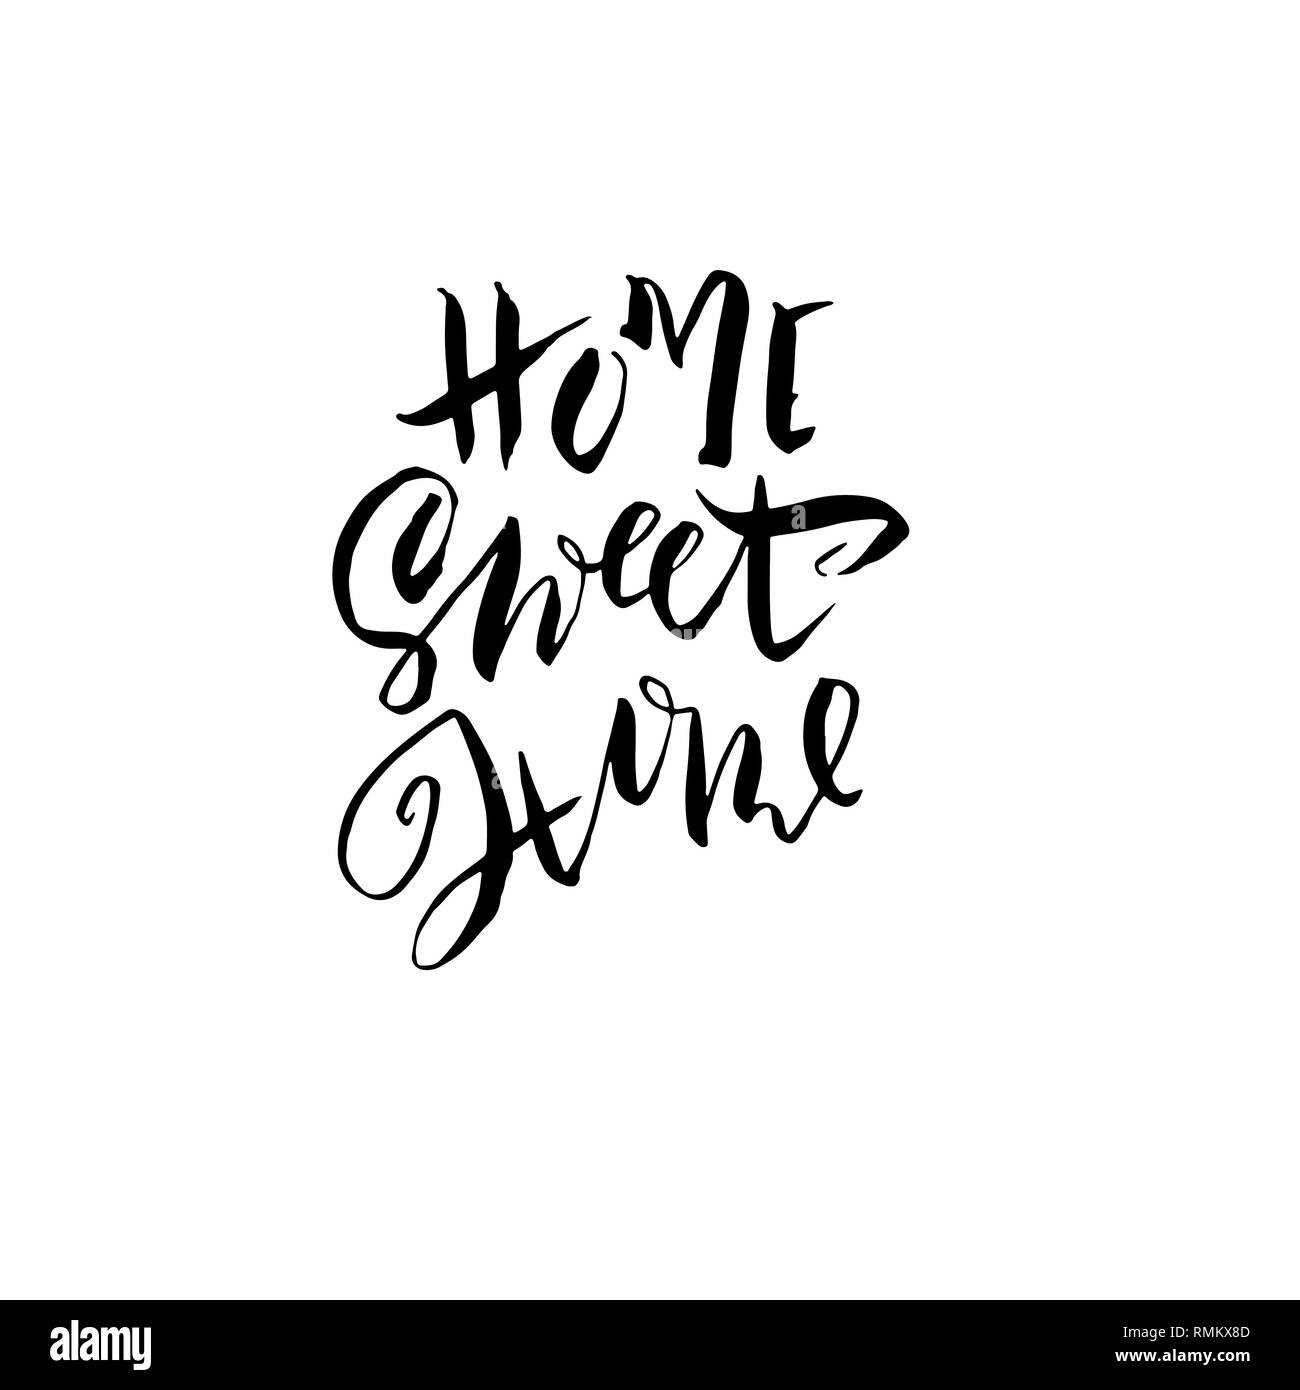 Home sweet home. Modern dry brush lettering. Vector illustration. Stock Vector